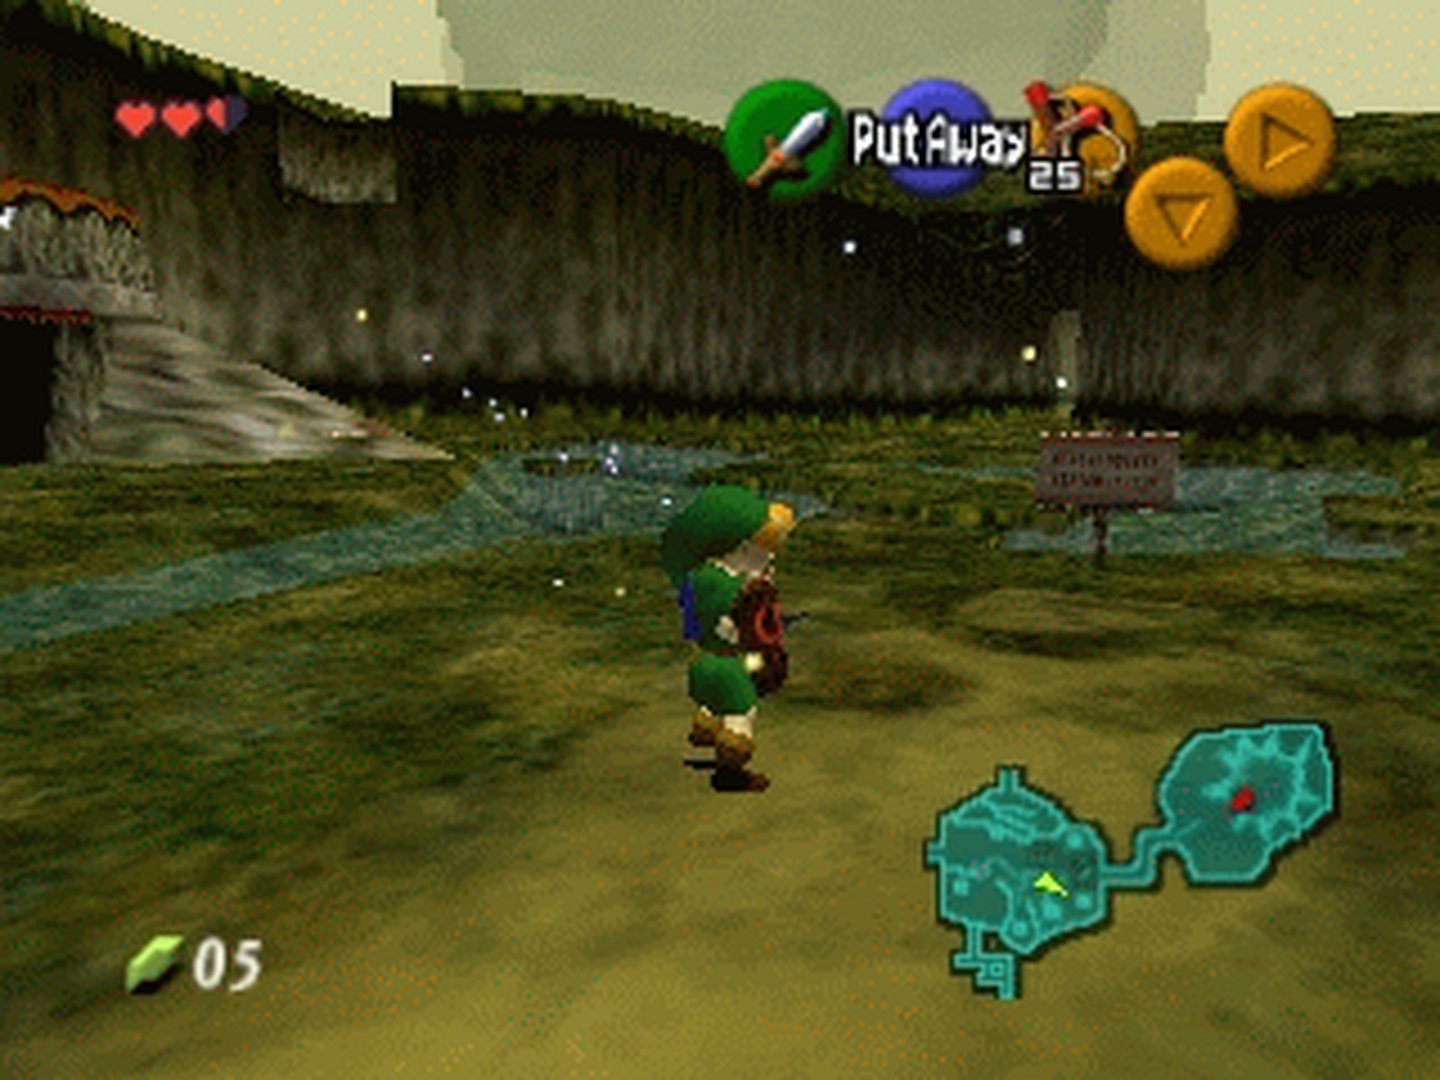 N64 GameBase The_Legend_of_Zelda_-_Ocarina_of_Time_(U)_(V1.0) Nintendo 1998